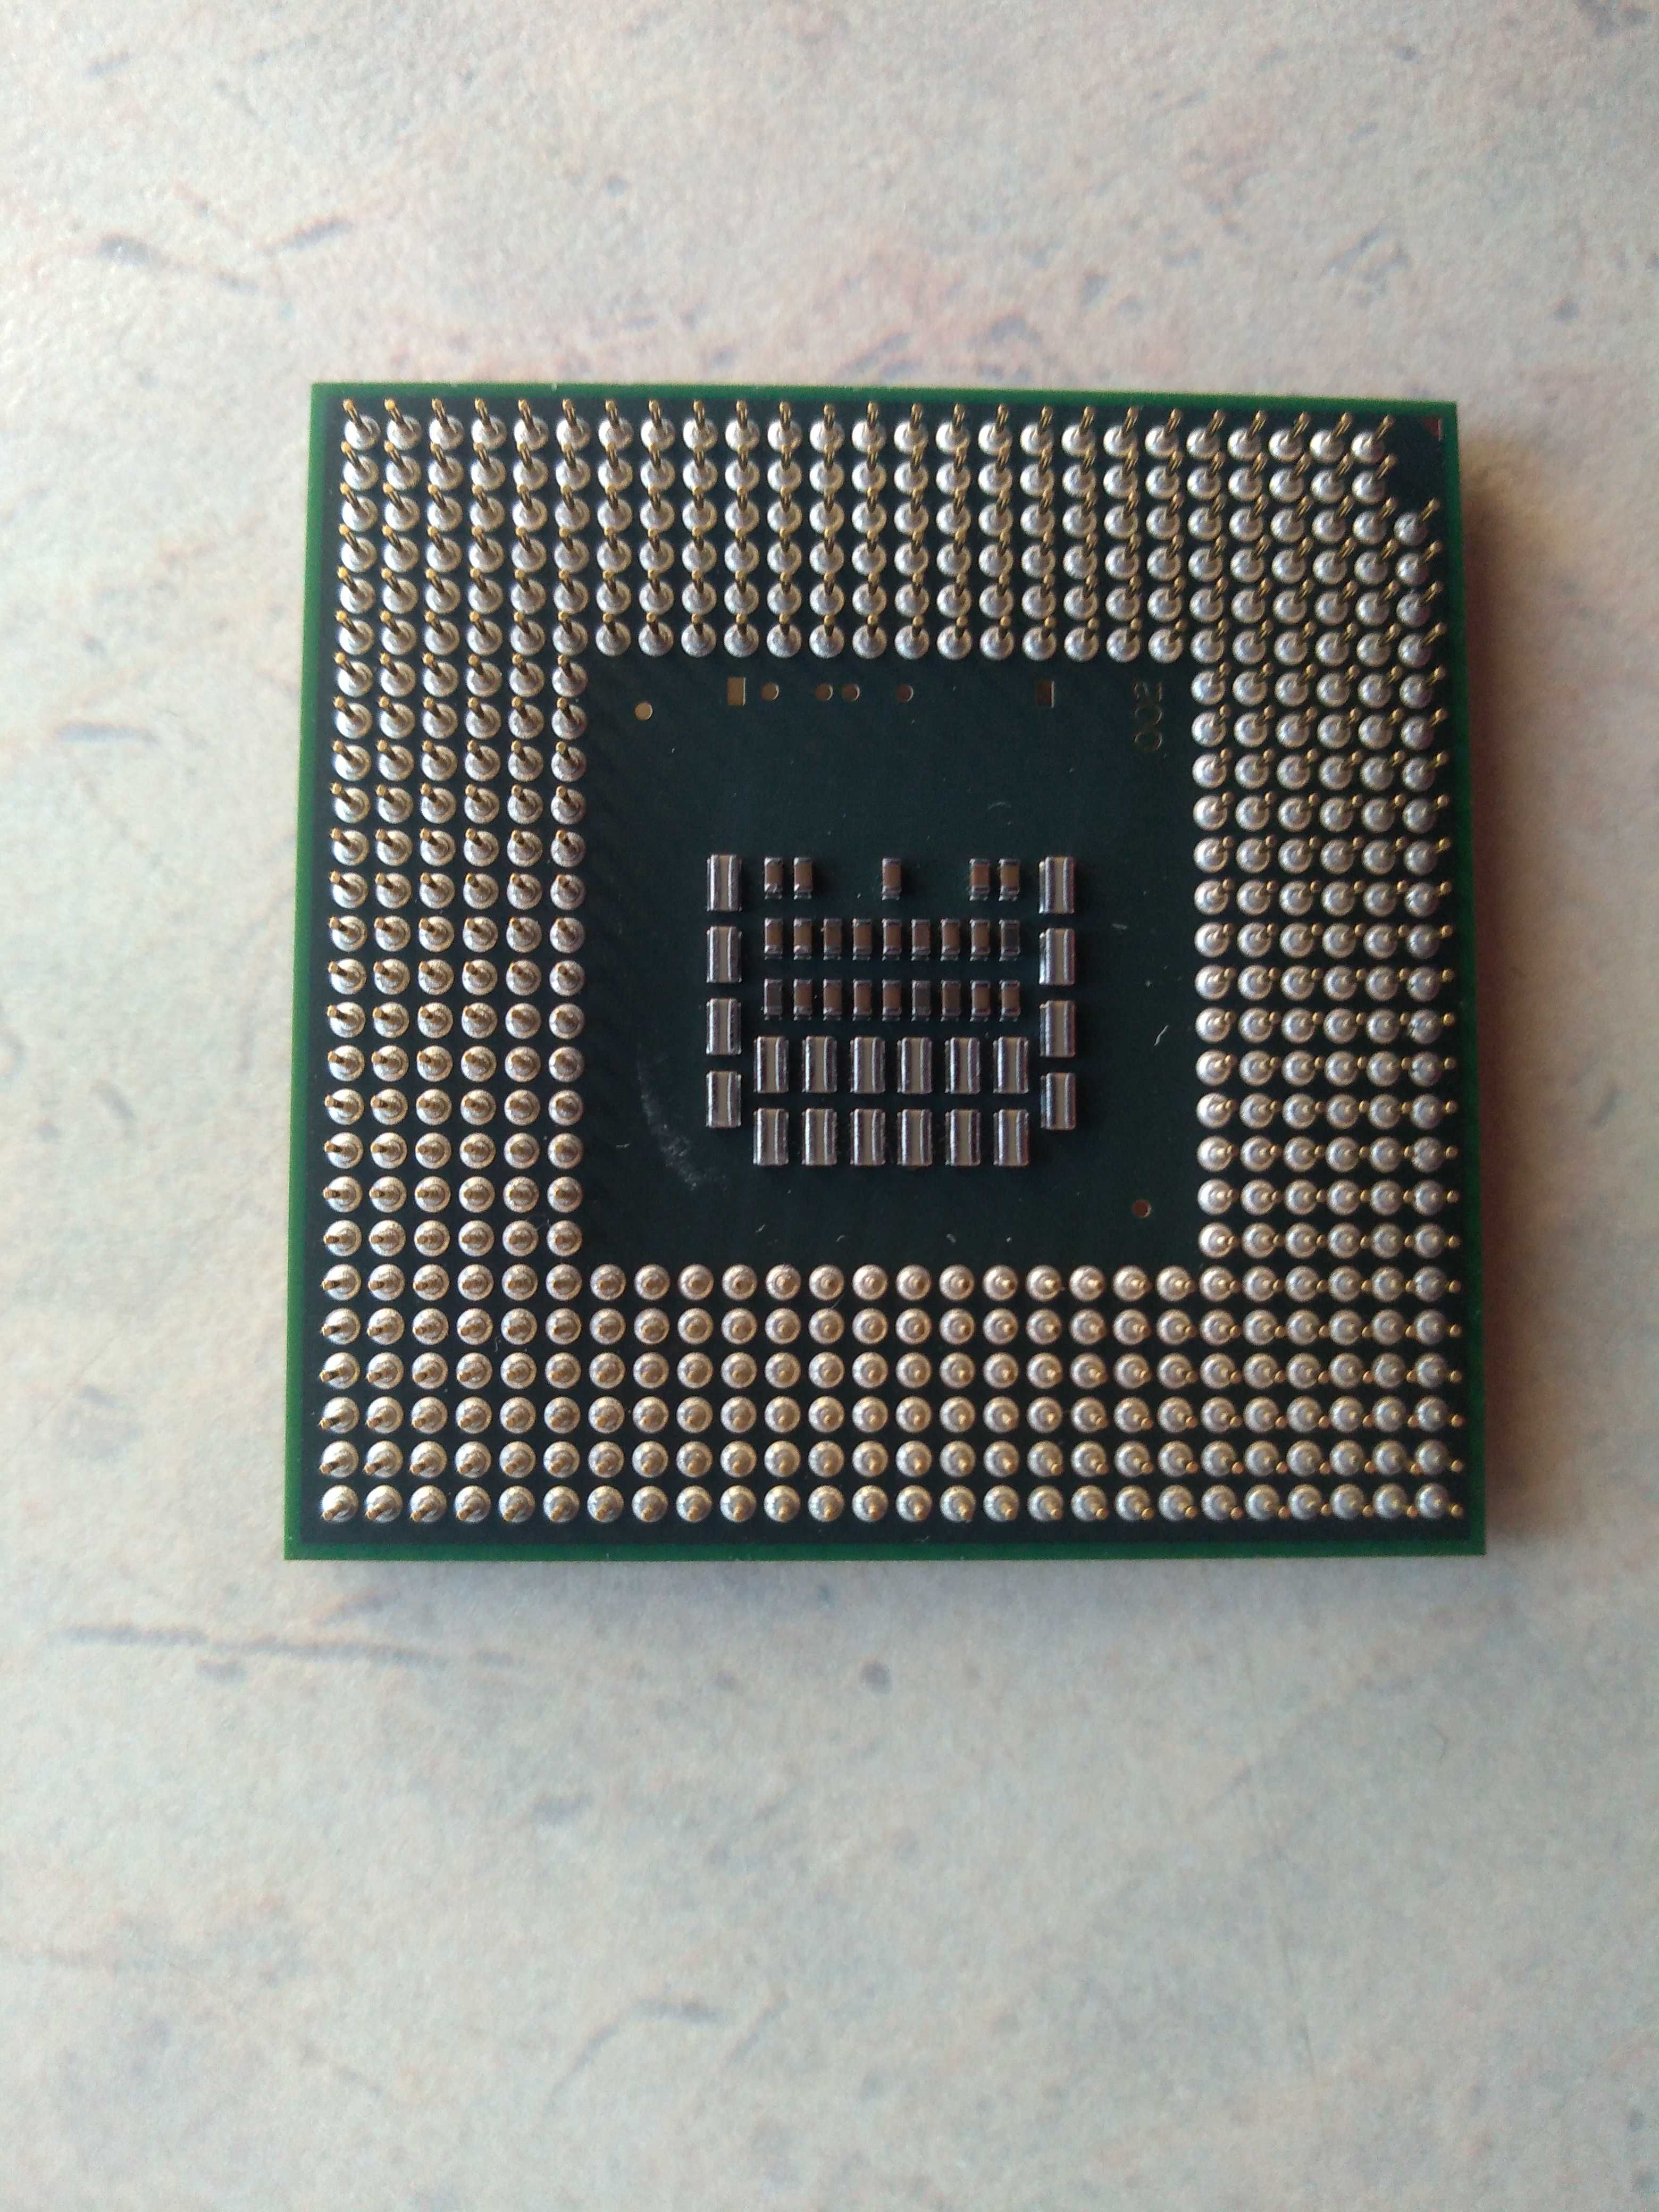 Procesor Intel Core2Duo T9400 (laptop) i inne komputerowe.